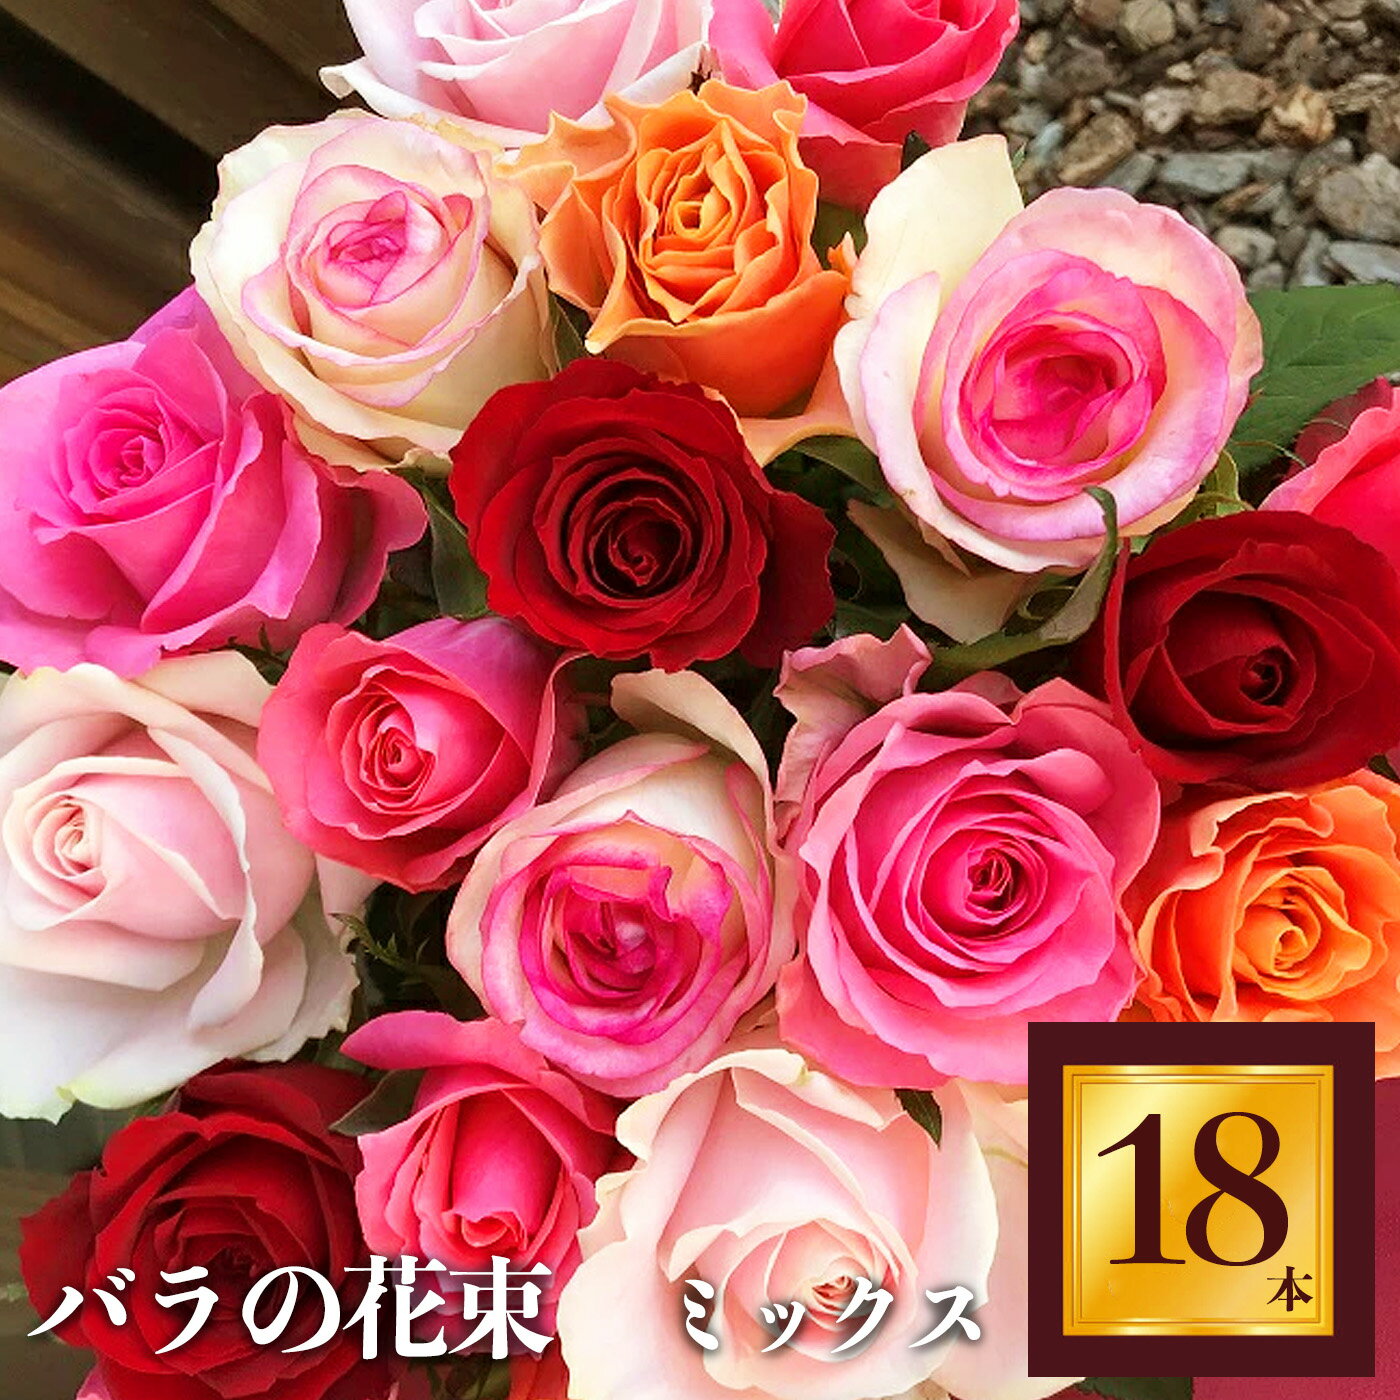 8位! 口コミ数「0件」評価「0」Heguri Rose バラの花束（18本）ローズ フラワー 新鮮 高品質 豪華 綺麗 平群のバラ 花束 平群ブランド 誕生日 記念日 お祝･･･ 